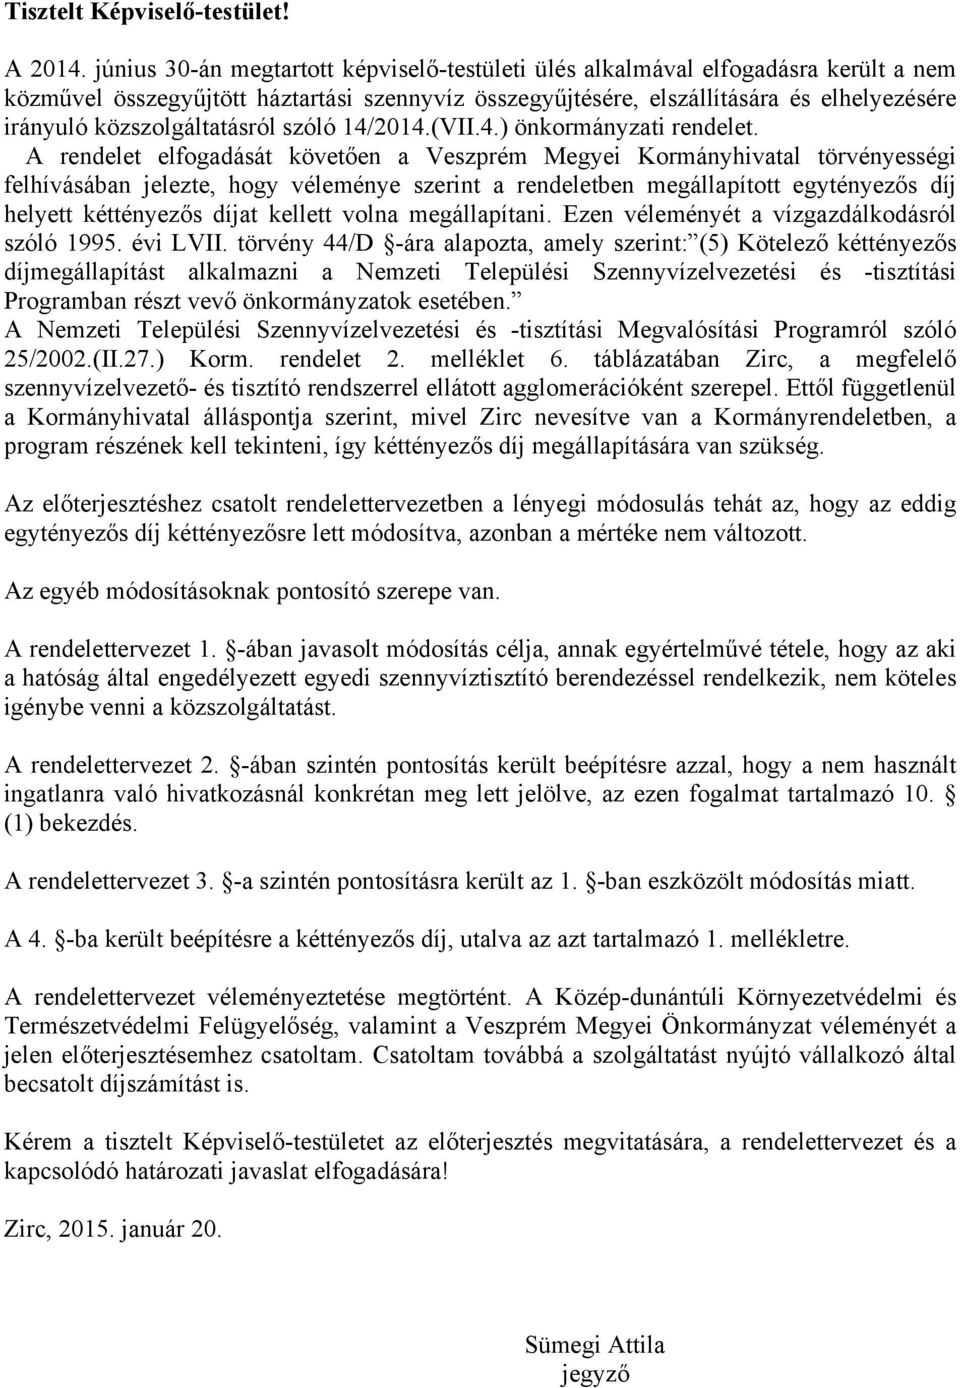 közszolgáltatásról szóló 14/2014.(VII.4.) önkormányzati rendelet.